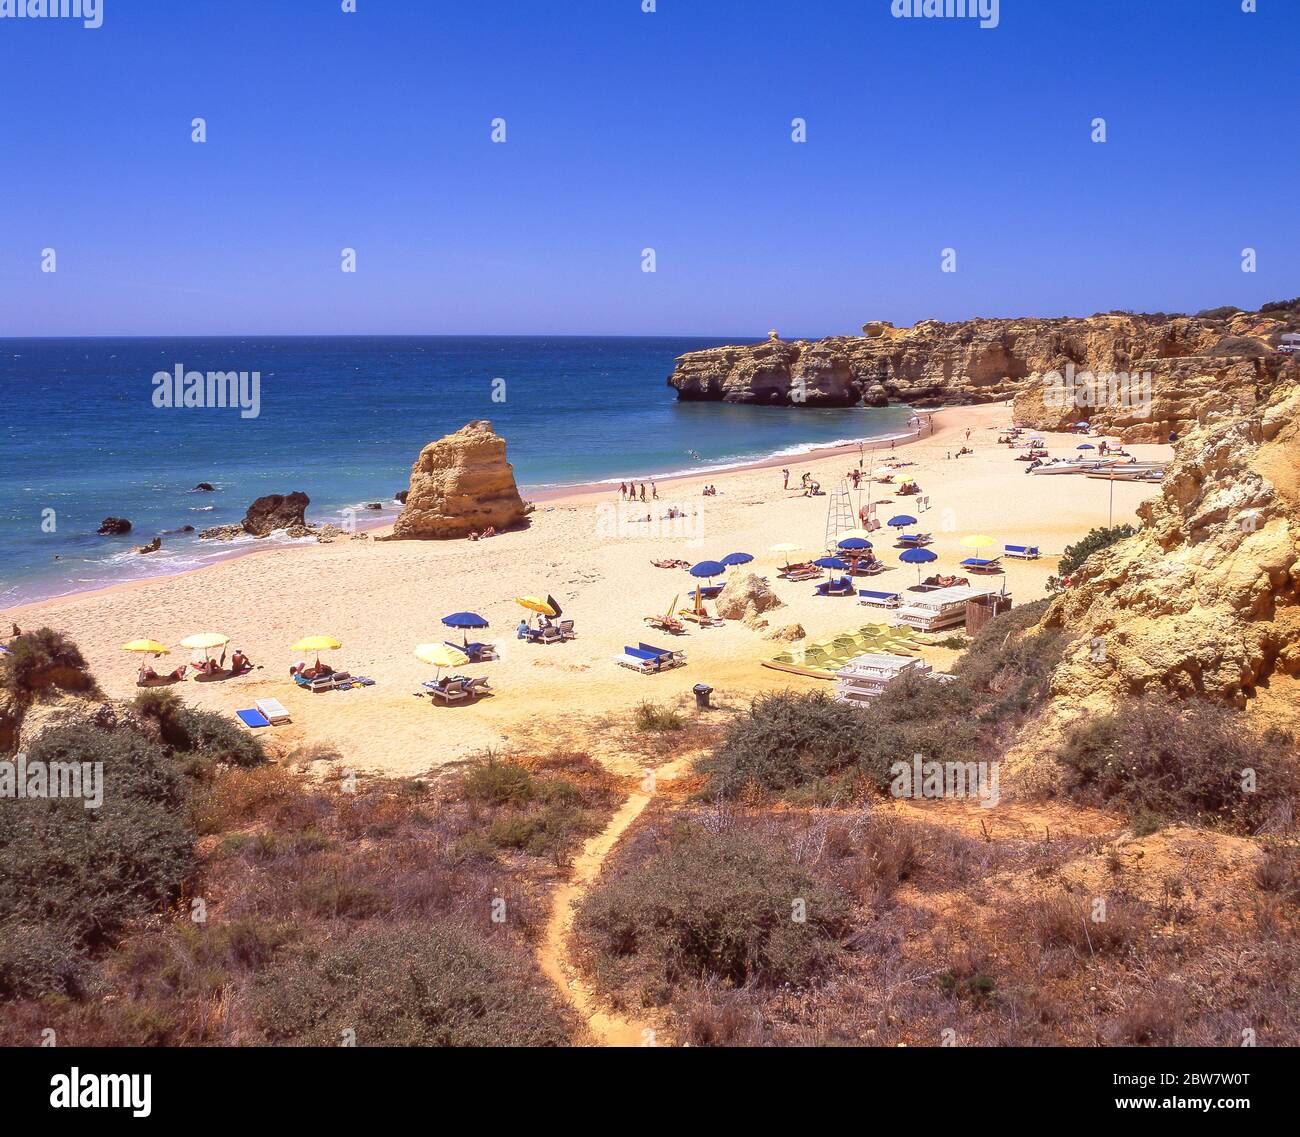 Praia de Sao Rafael, près d'Albufeira, région de l'Algarve, Portugal Banque D'Images